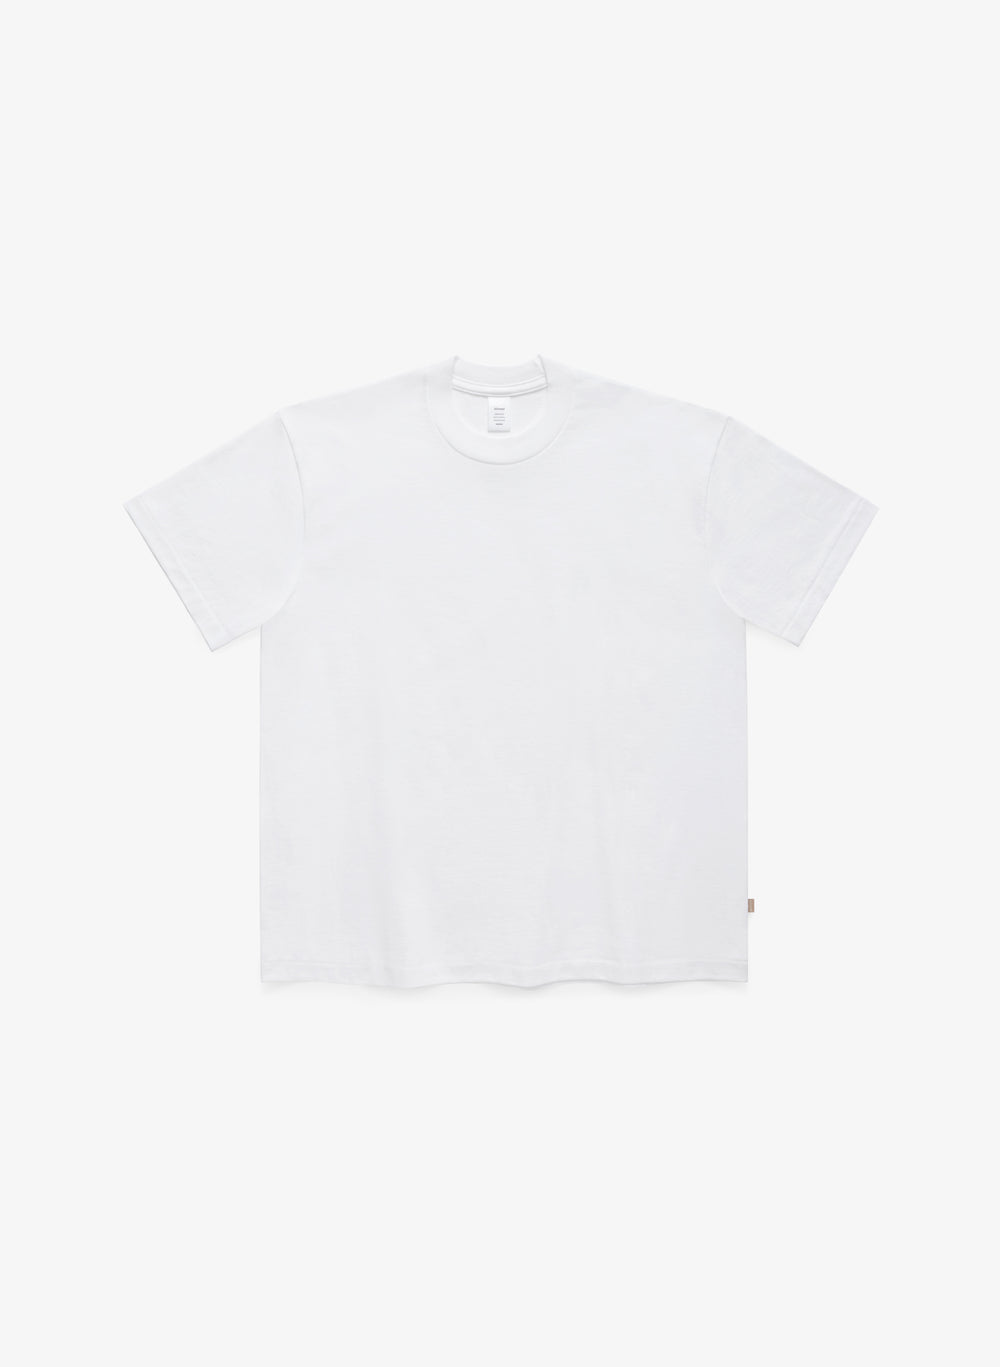 J2000 T-Shirt - White